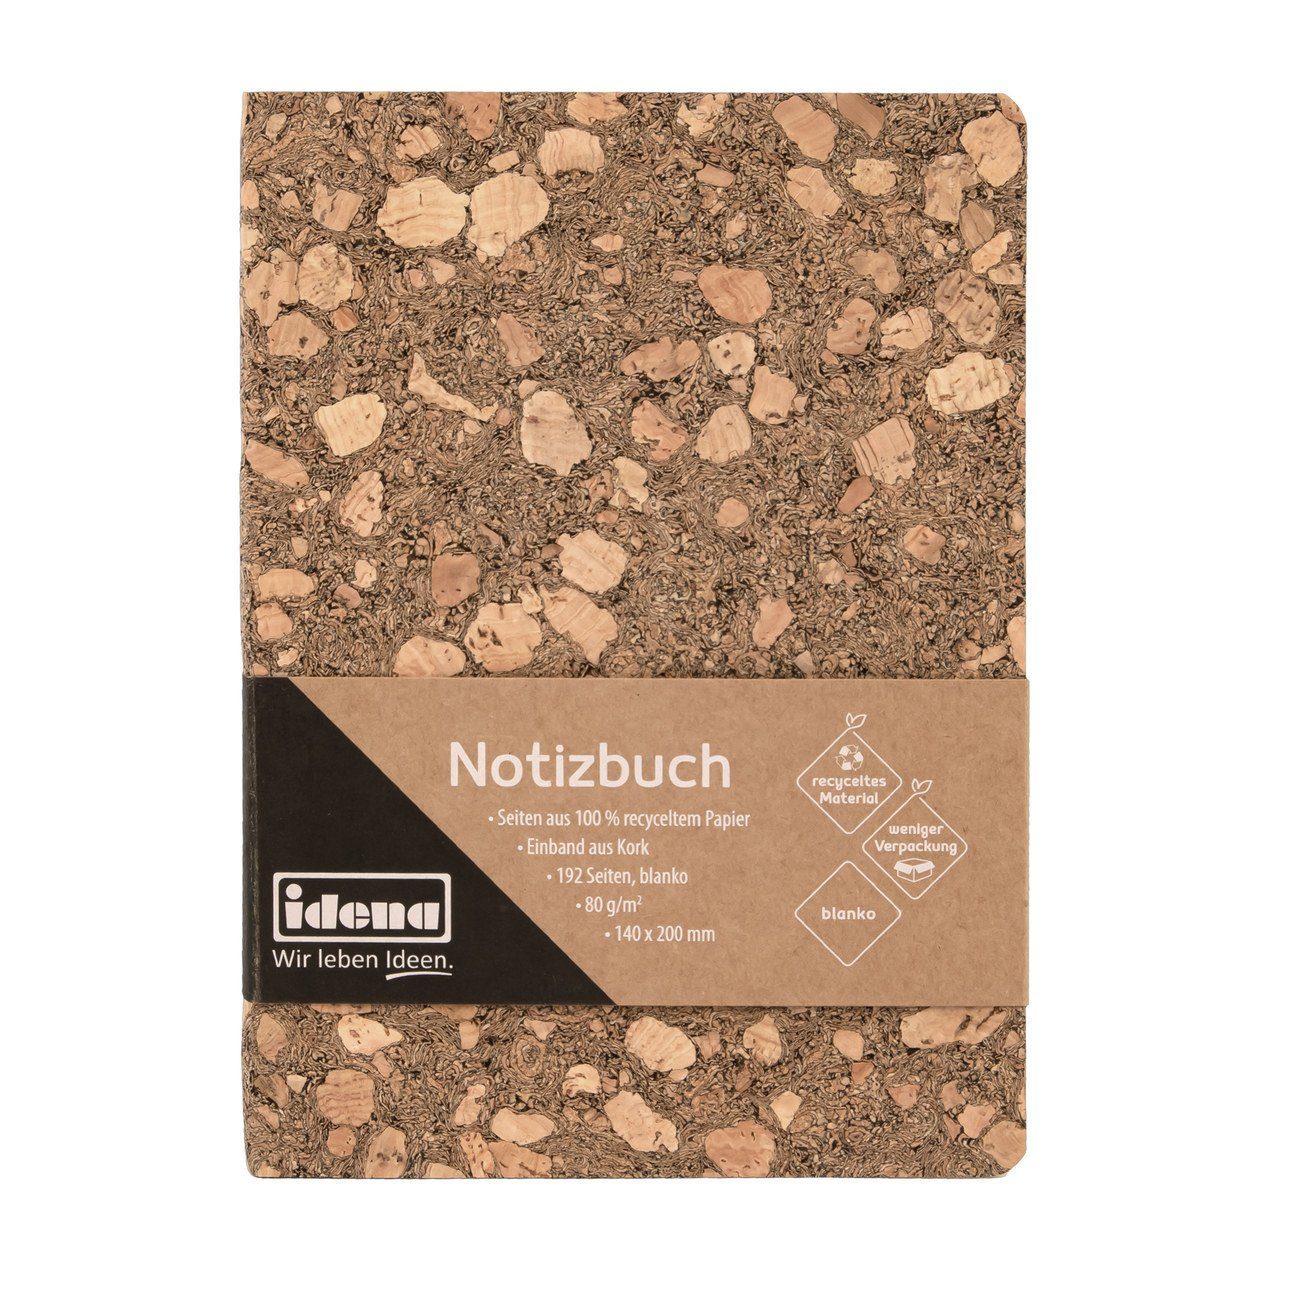 Idena Notizbuch Notizbuch - Notebook - Korkeinband 192 Seiten blanko - 